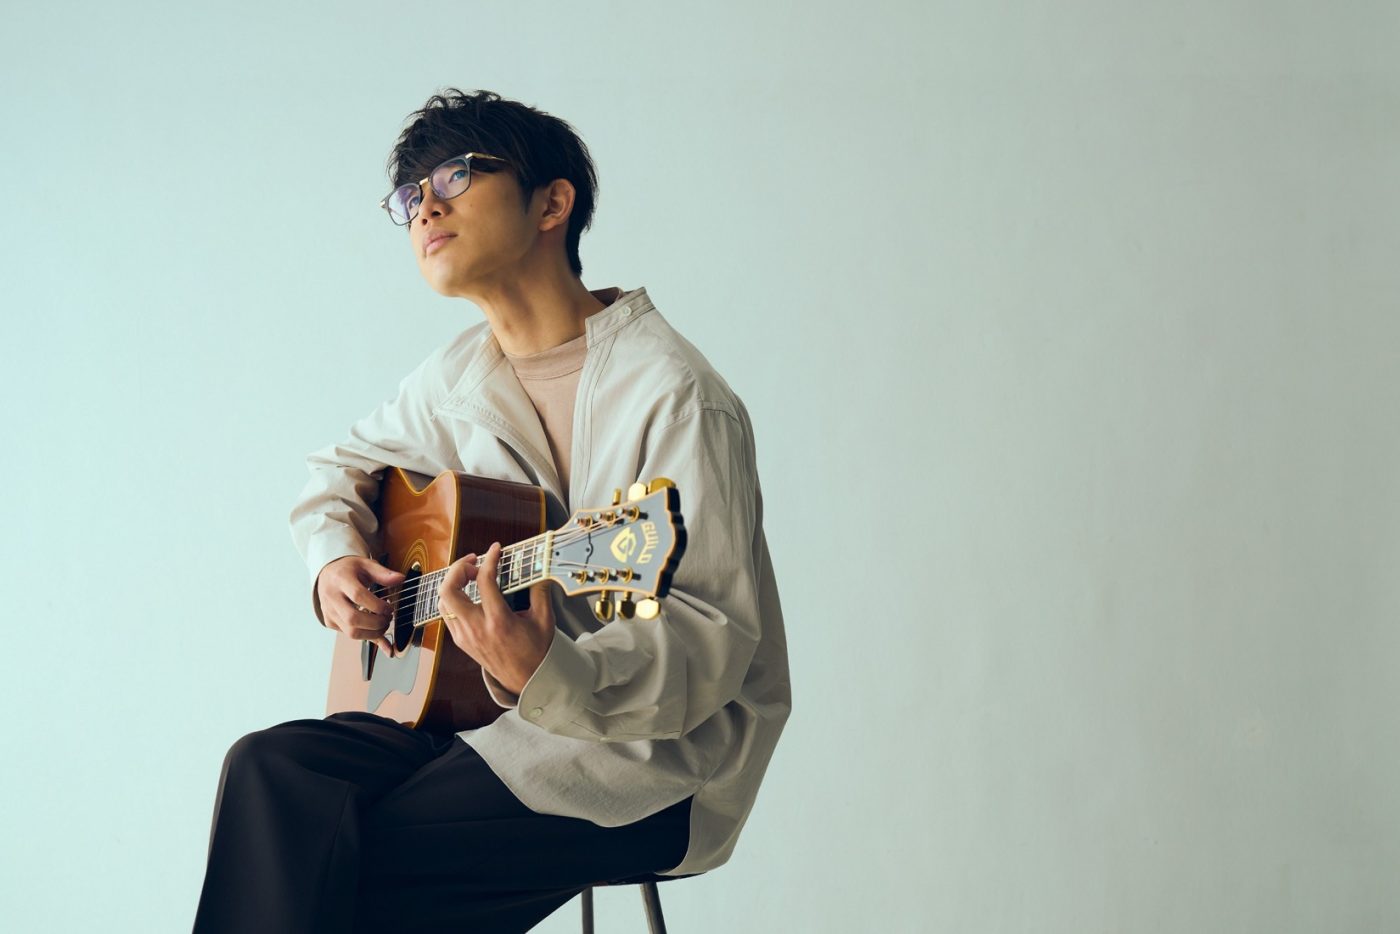 川崎鷹也、カバーシリーズの第1弾EP『白』のリリースと企画ライブツアーの開催を発表